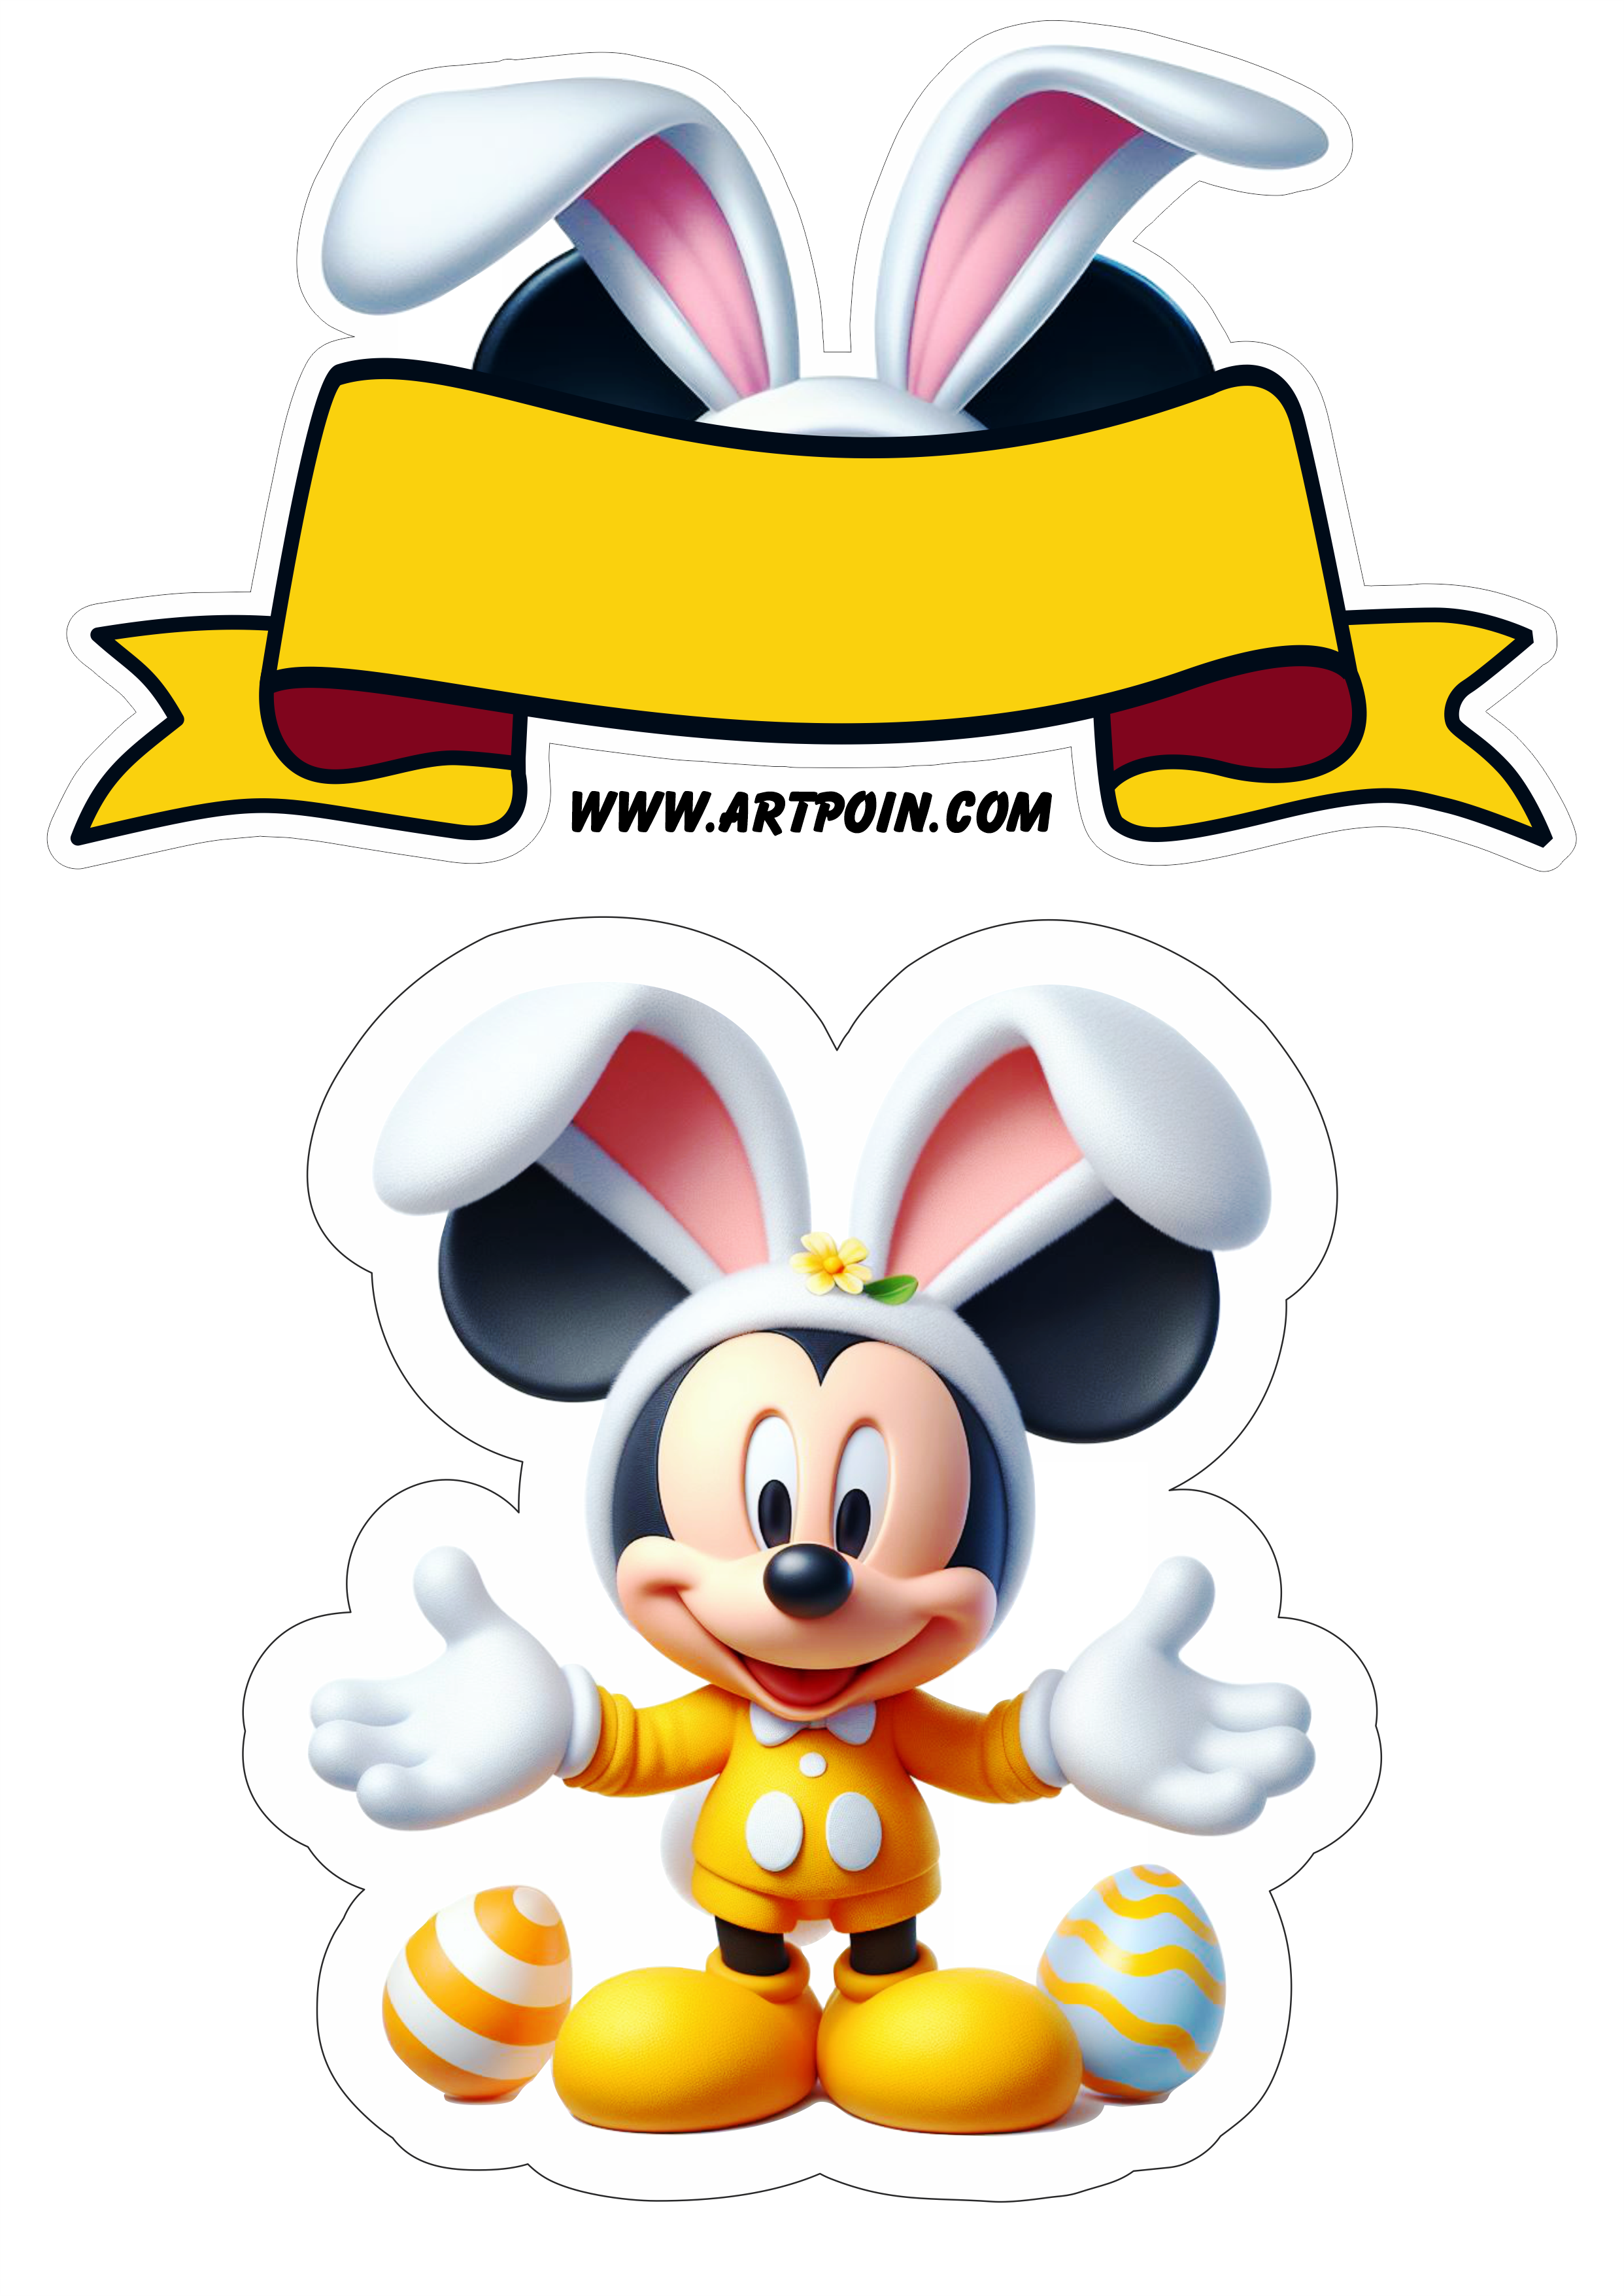 Mickey Mouse topo de bolo fantasia de coelhinho da páscoa amarelo